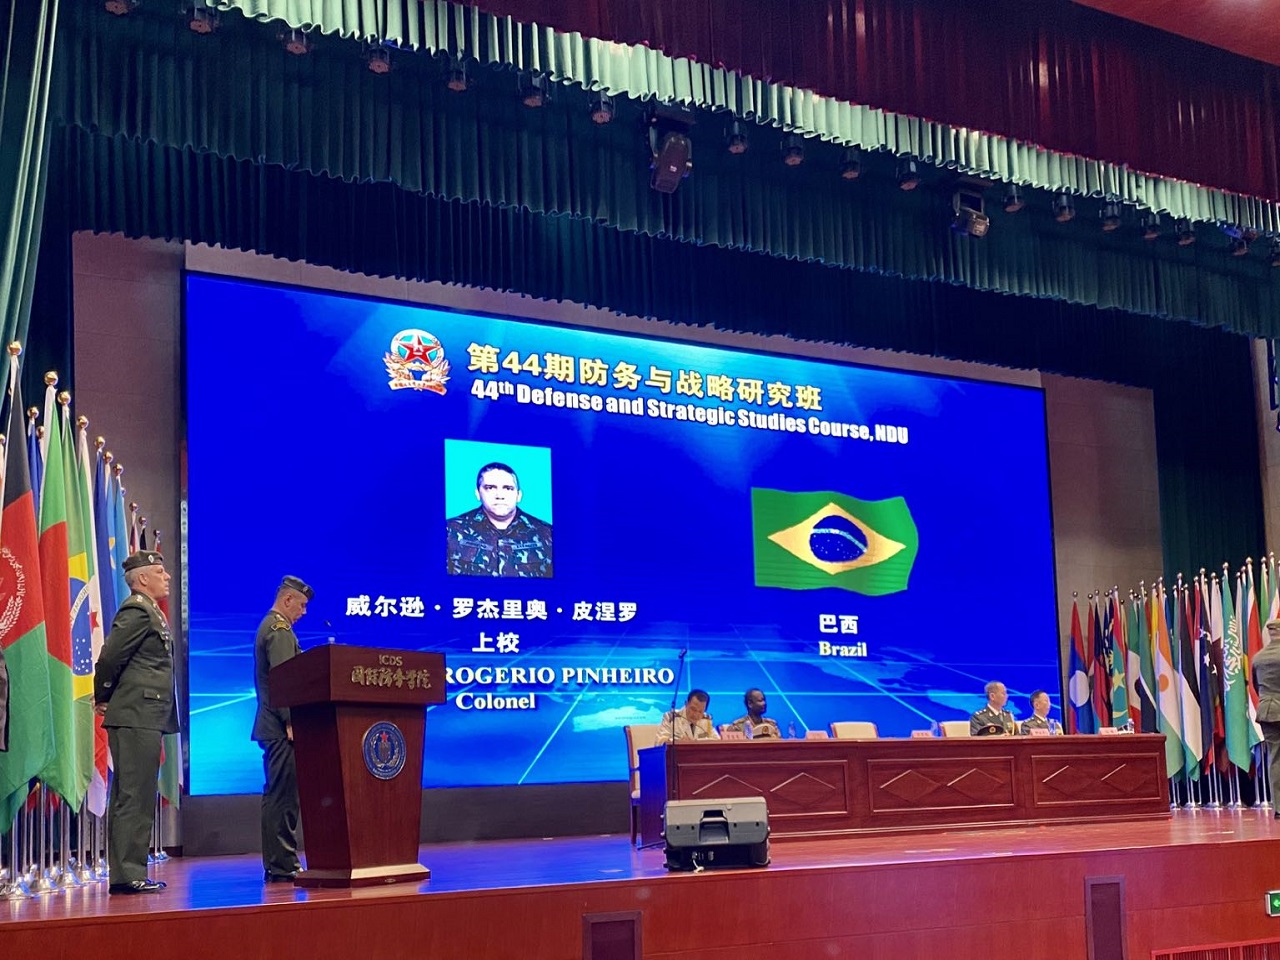 Oficiais do Exército Brasileiro concluem curso de altos estudos na National Defense University da China 2